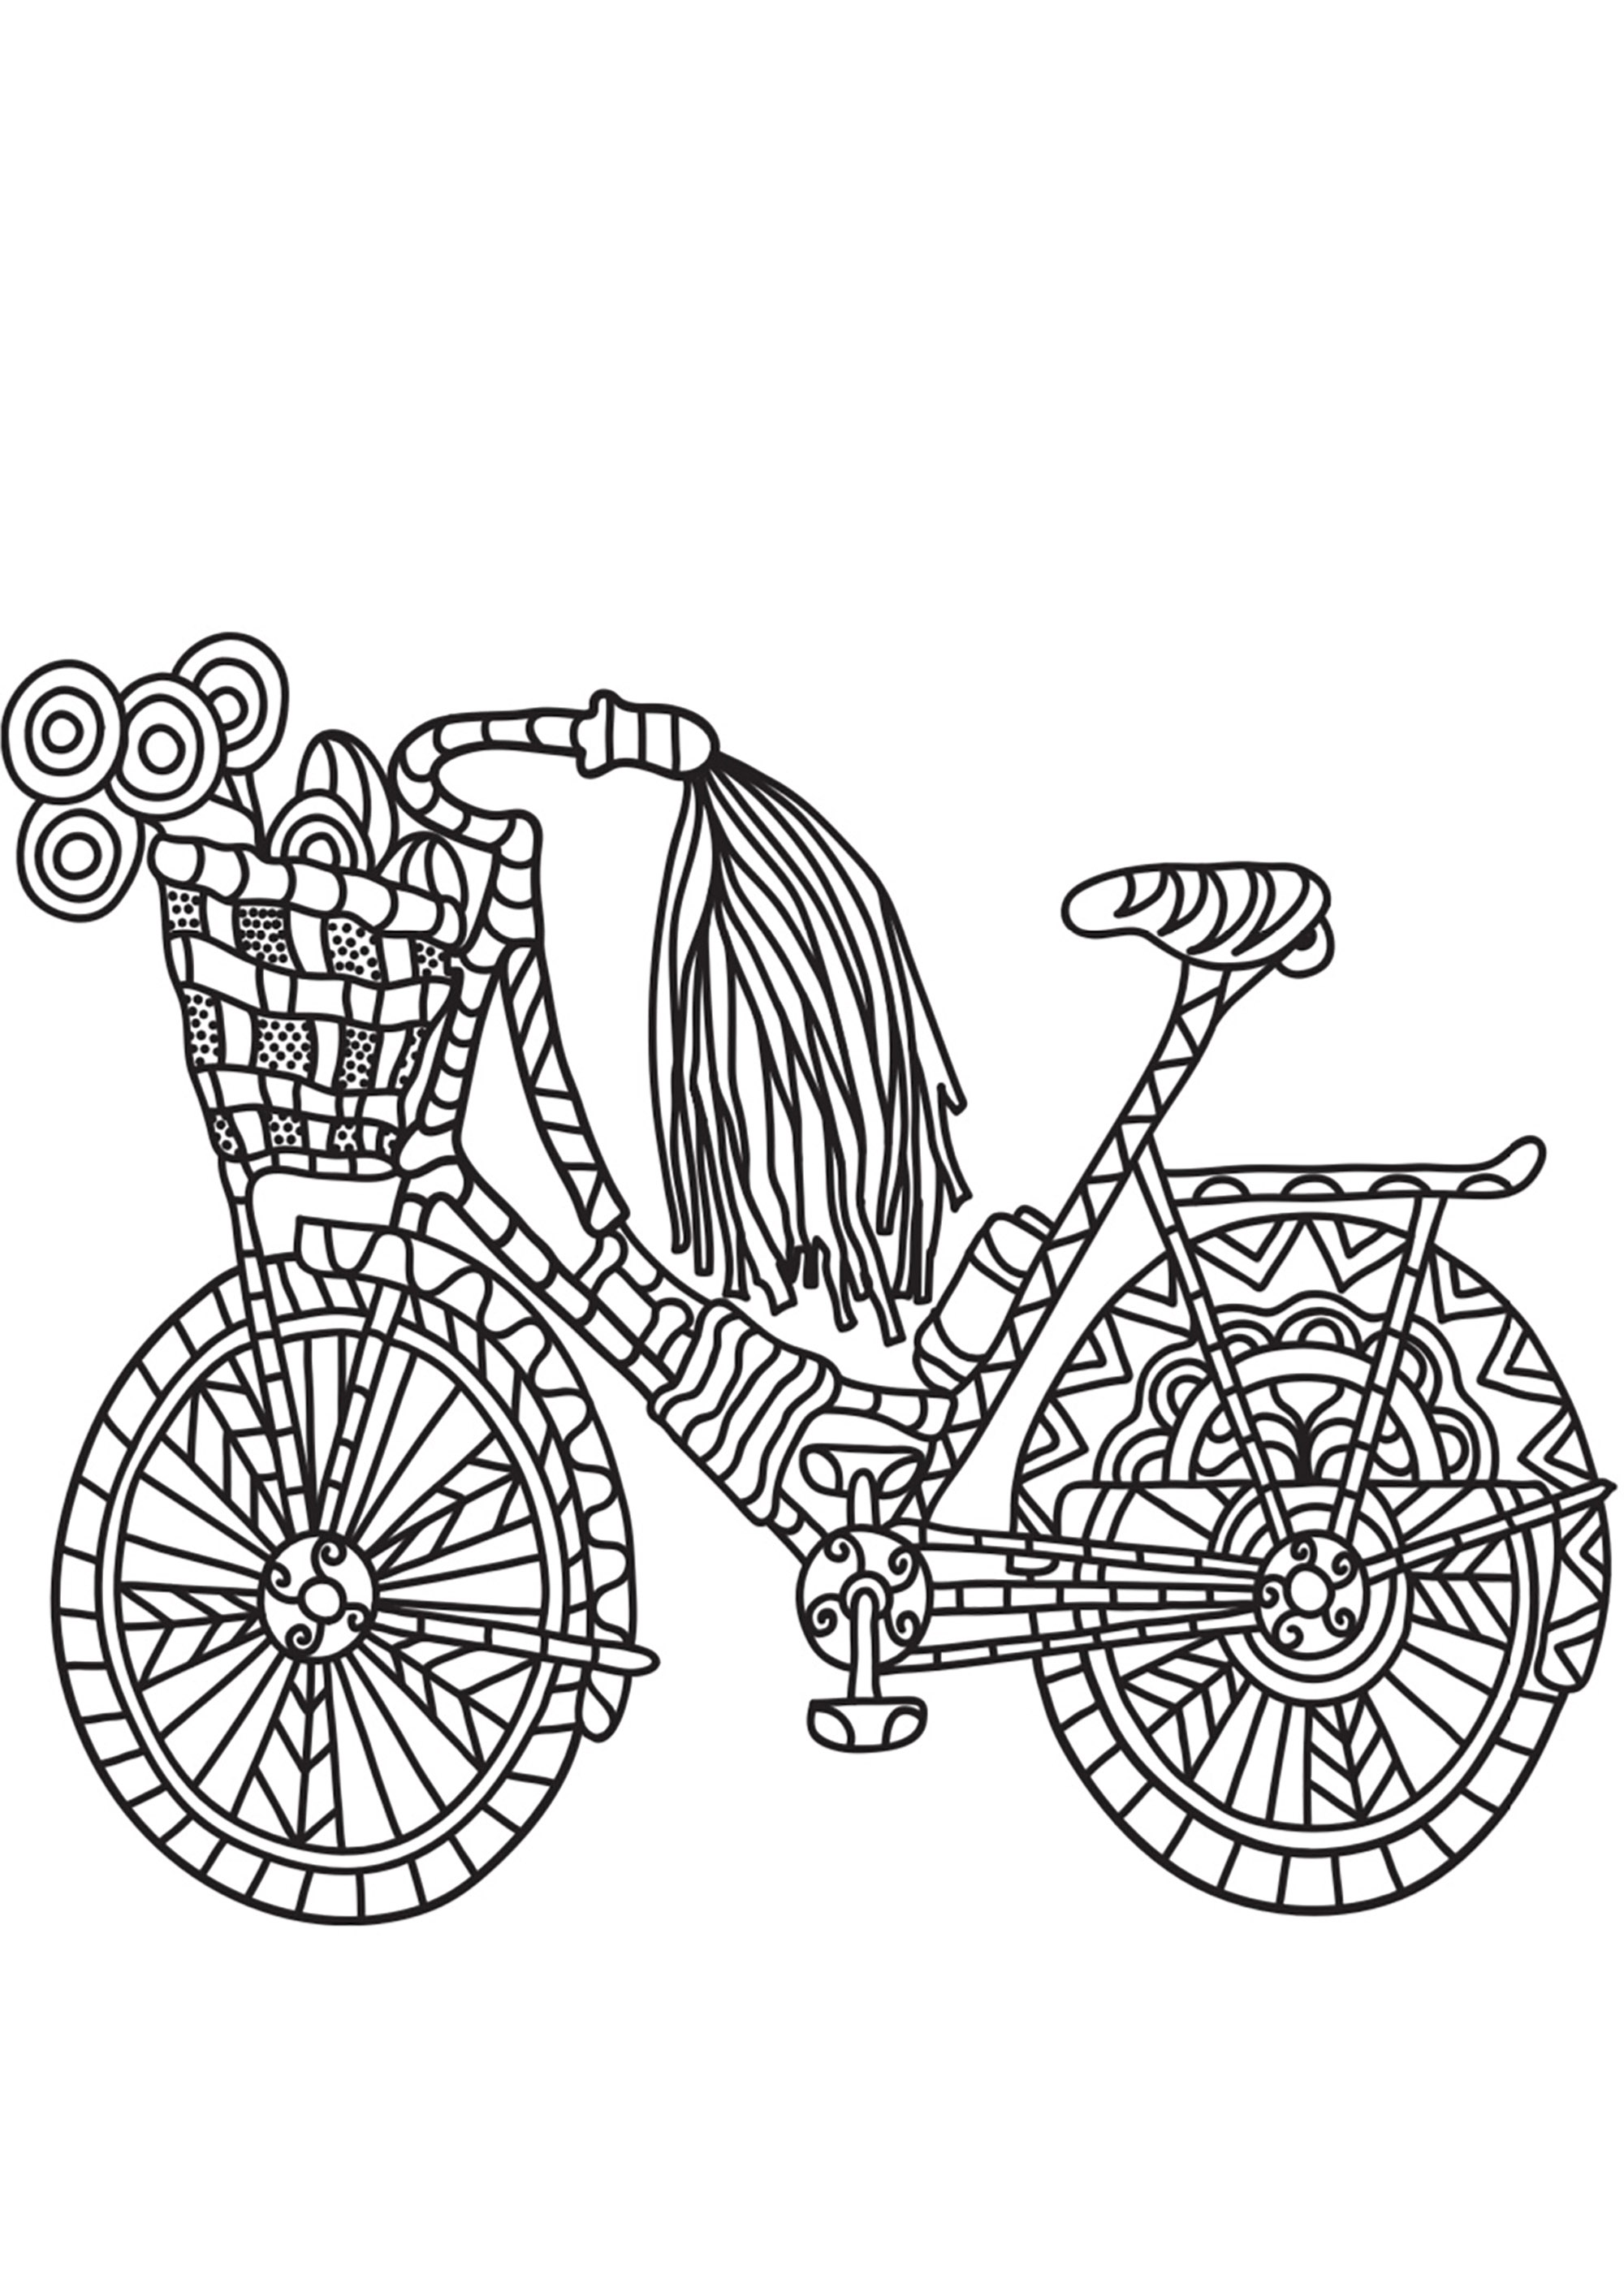 Desenho de Bicicleta para Colorir - Colorir.com